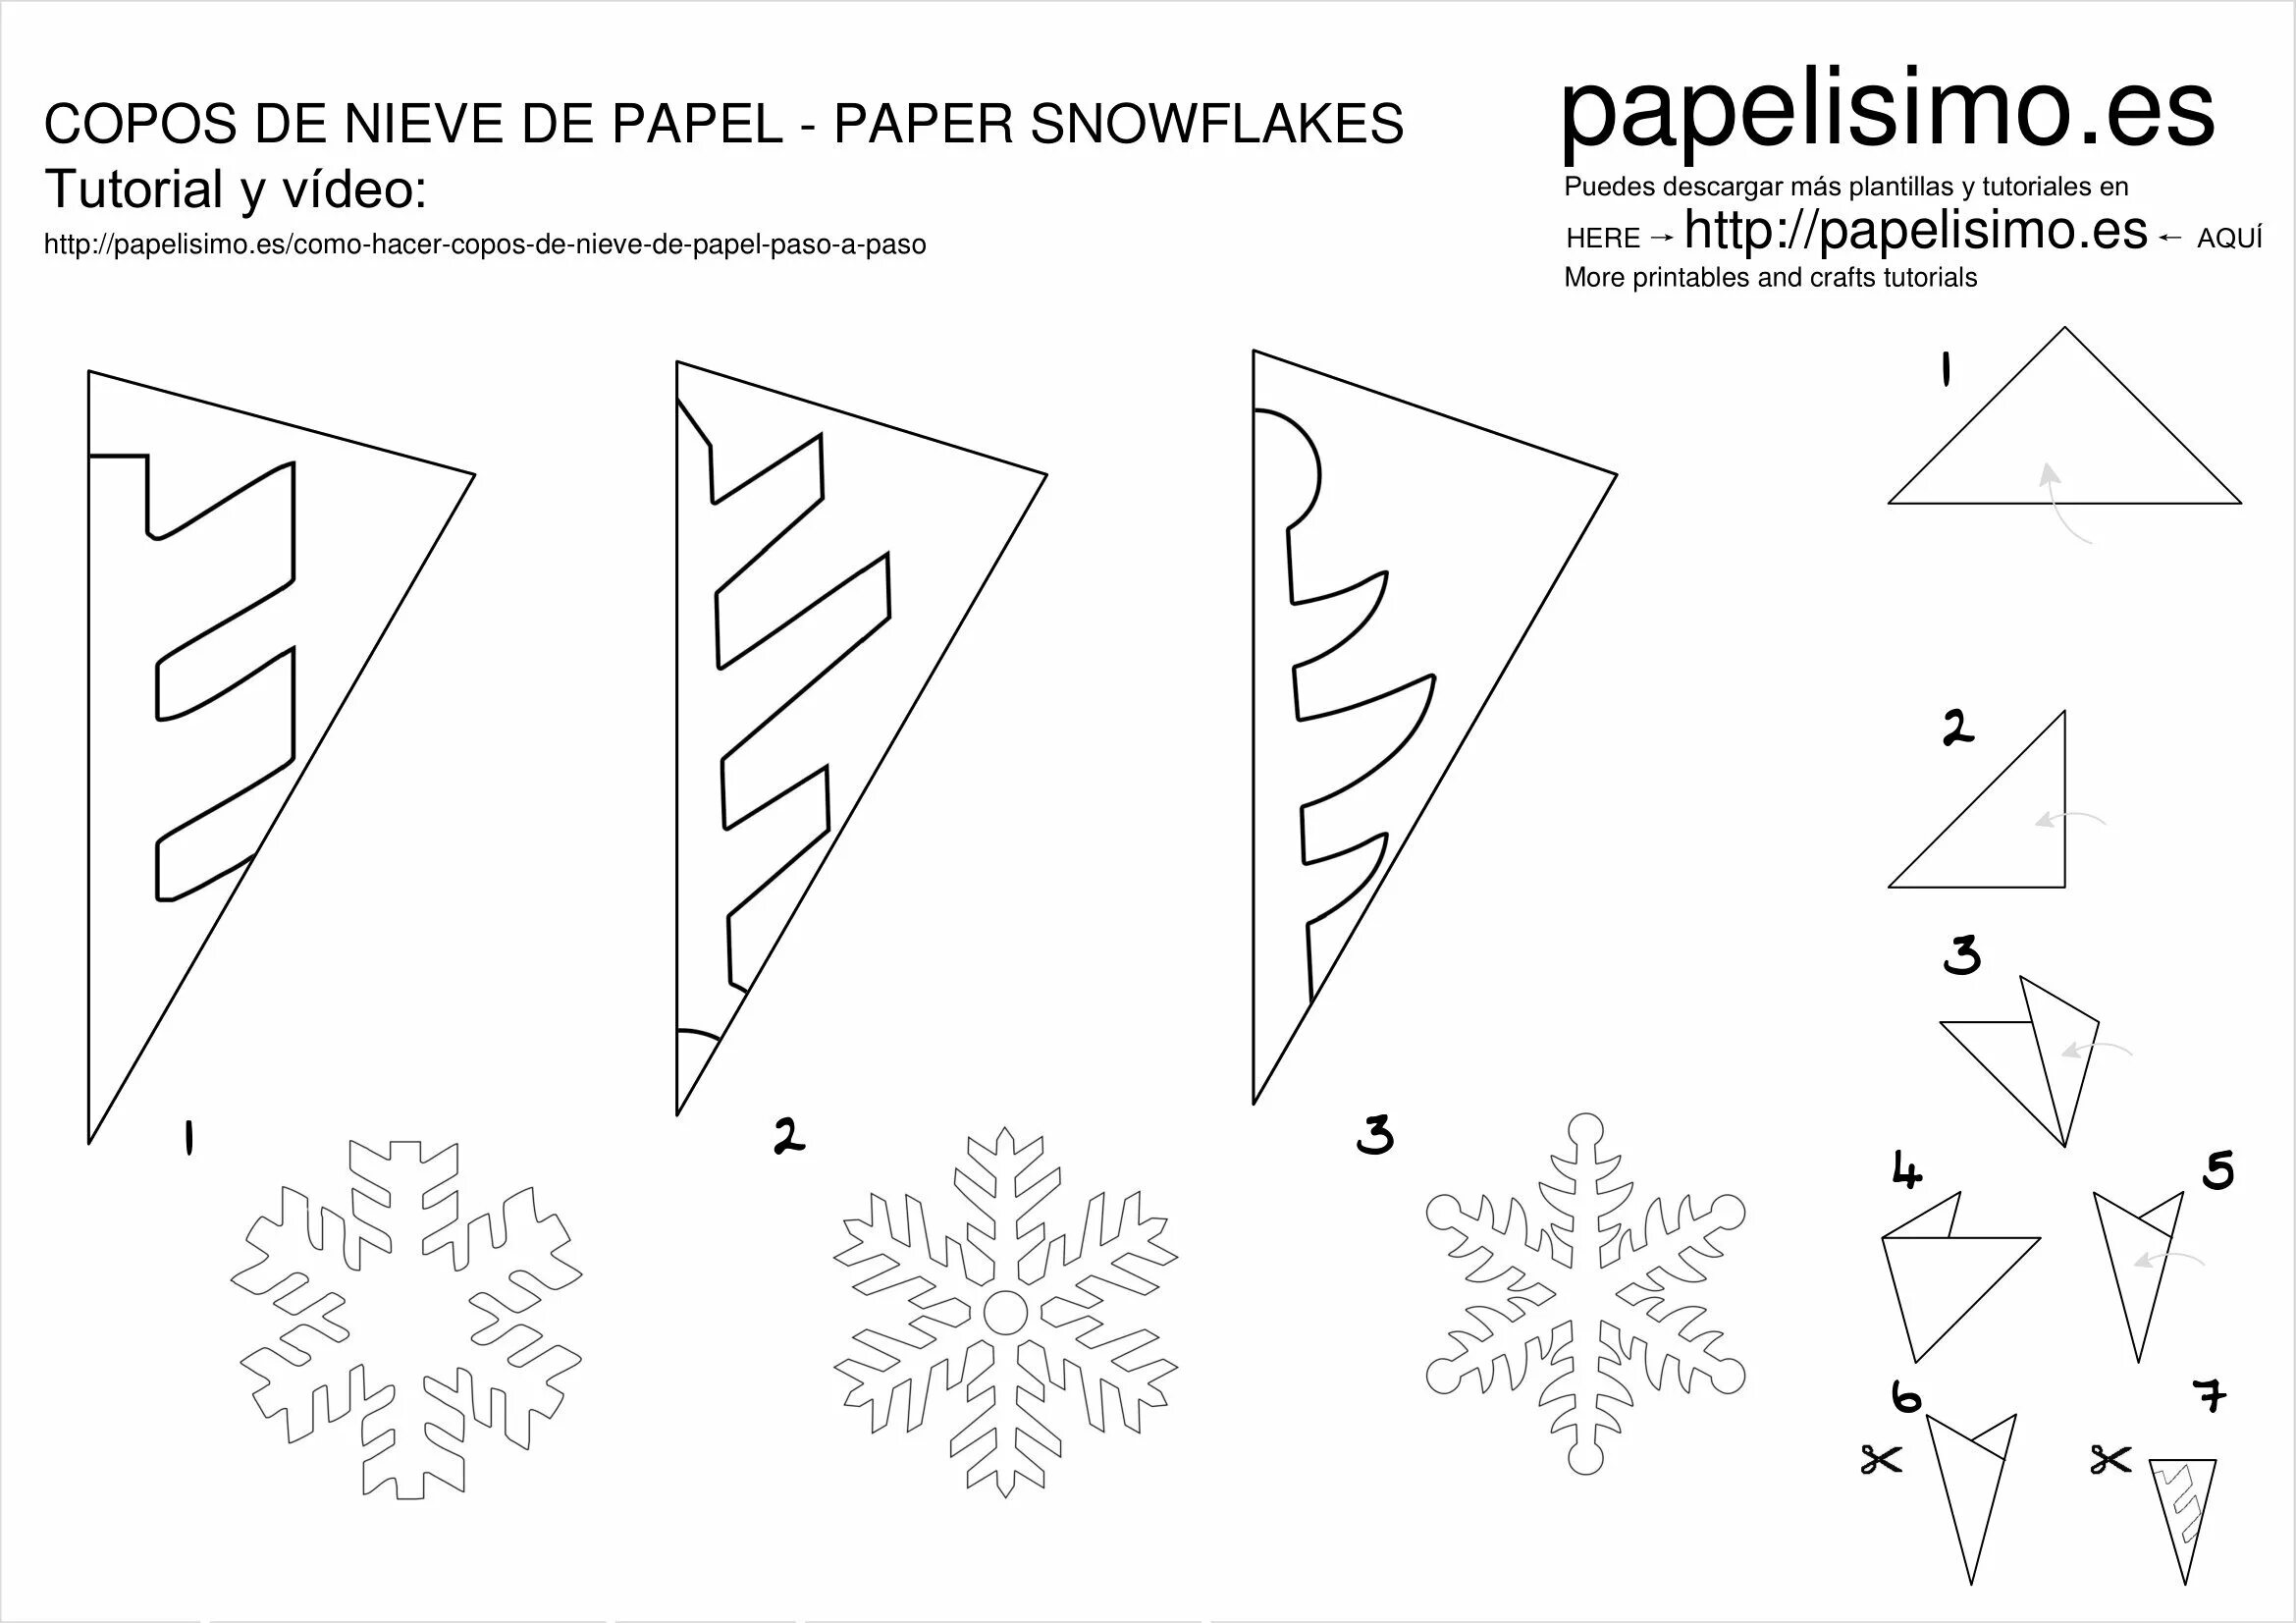 Красивые снежинки из бумаги схемы для вырезания. Как вырезать снежинку из бумаги легко и красиво пошагово. Узоры для вырезания снежинок из бумаги. Простые схемы снежинок из бумаги. Как складывать снежинки из бумаги схемы.